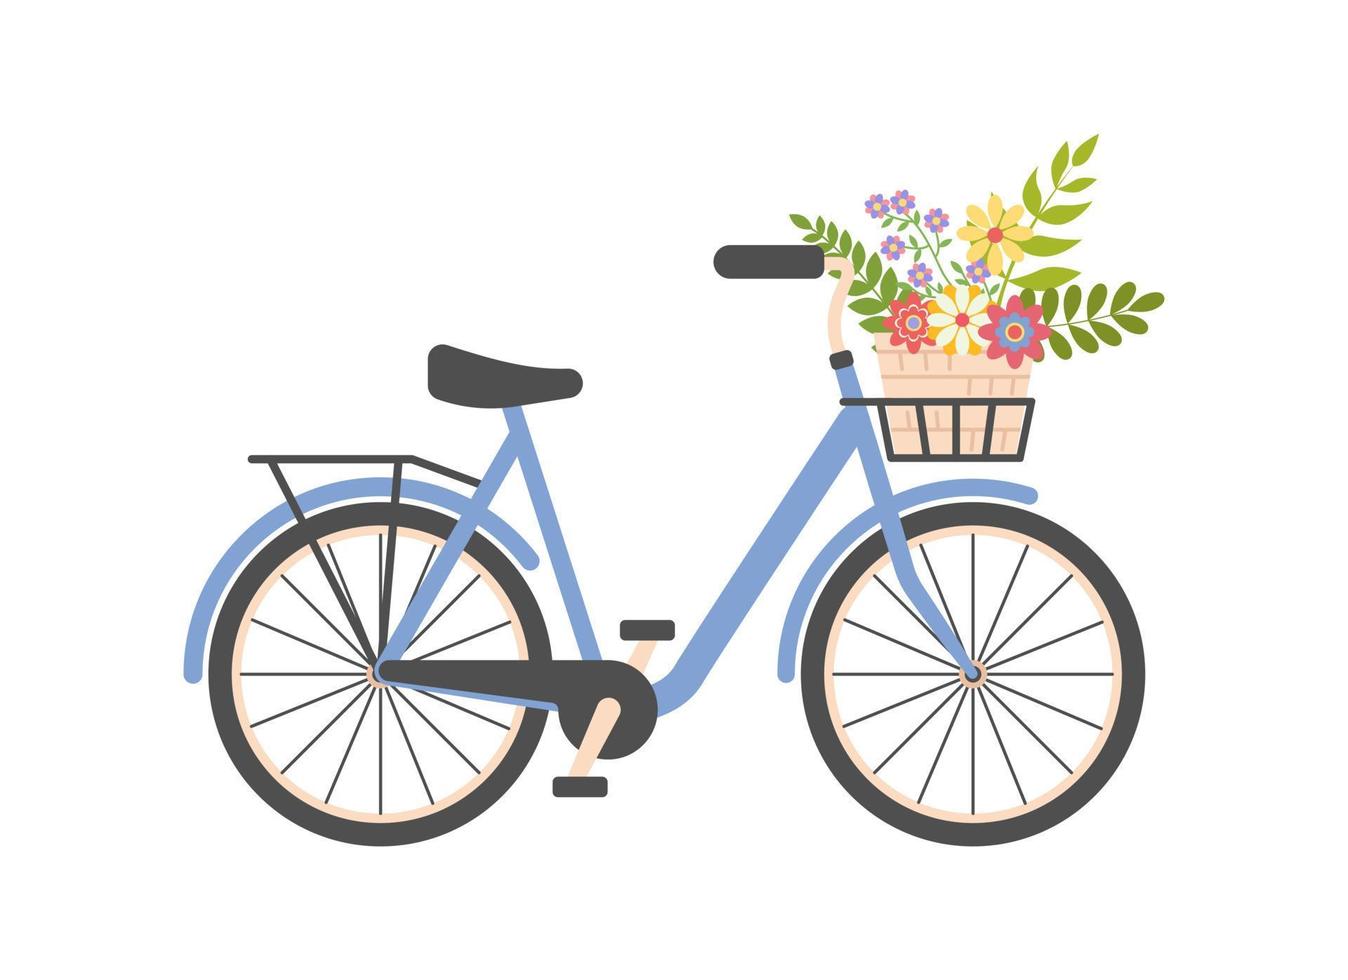 süß Damen Blau Fahrrad mit Korb von Frühling Blumen. Frauen Stadt retro Fahrrad. Sommer- Blumen- Jahrgang Reise Konzept. Romantik. gut zum Karten, Gruß. eben Vektor Illustration auf Weiß Hintergrund